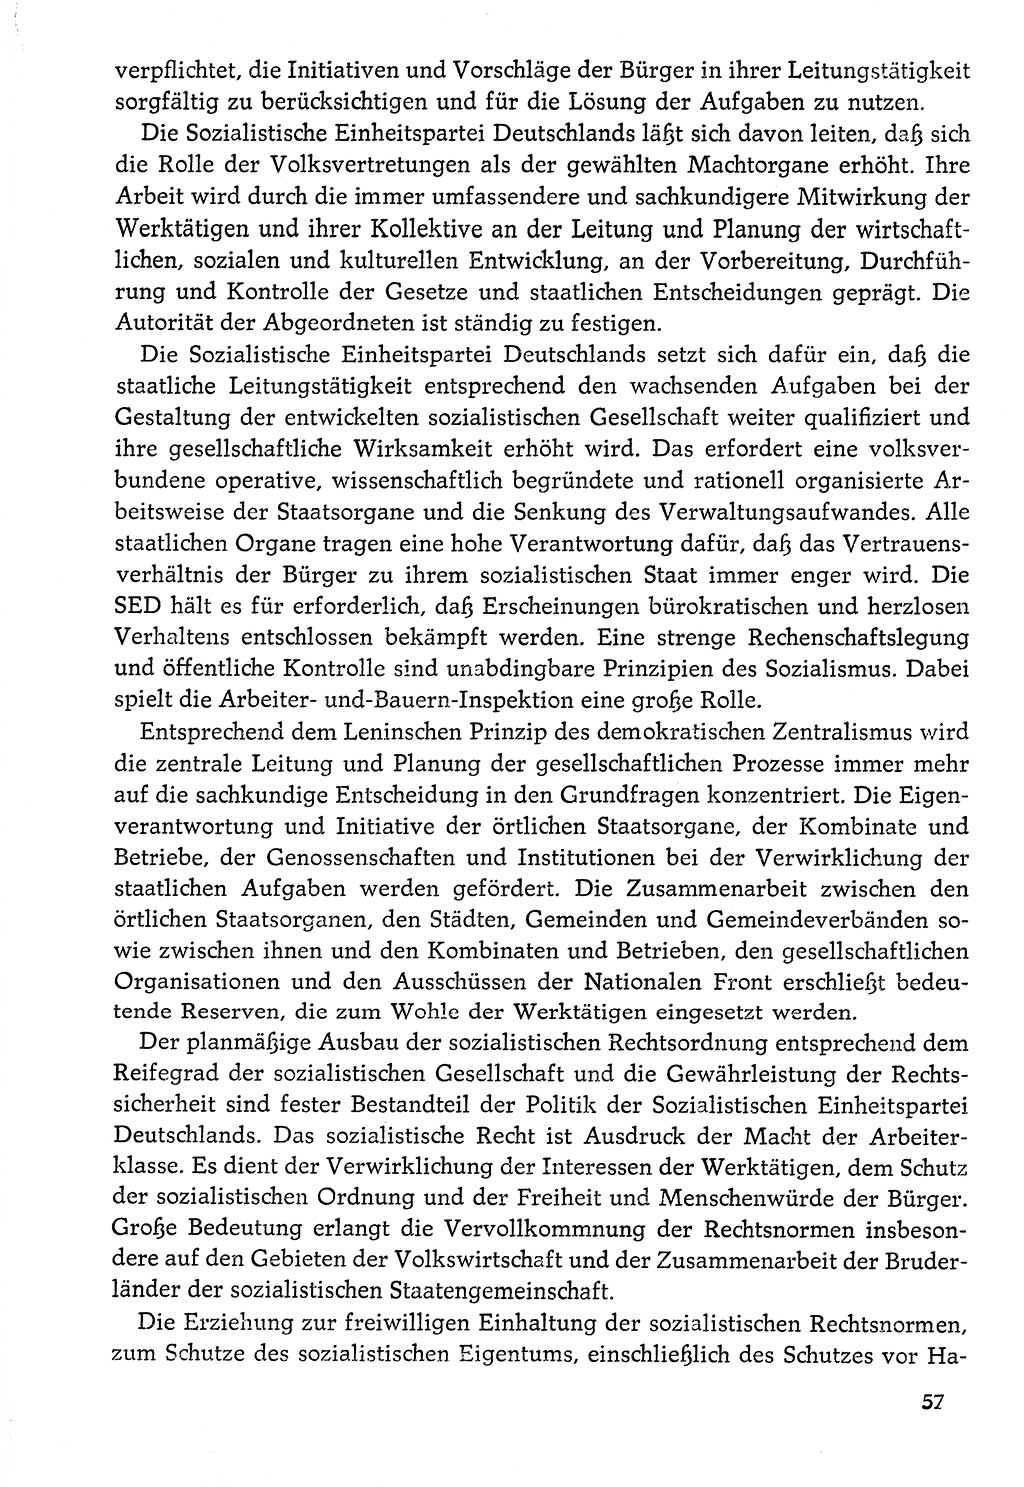 Dokumente der Sozialistischen Einheitspartei Deutschlands (SED) [Deutsche Demokratische Republik (DDR)] 1976-1977, Seite 57 (Dok. SED DDR 1976-1977, S. 57)